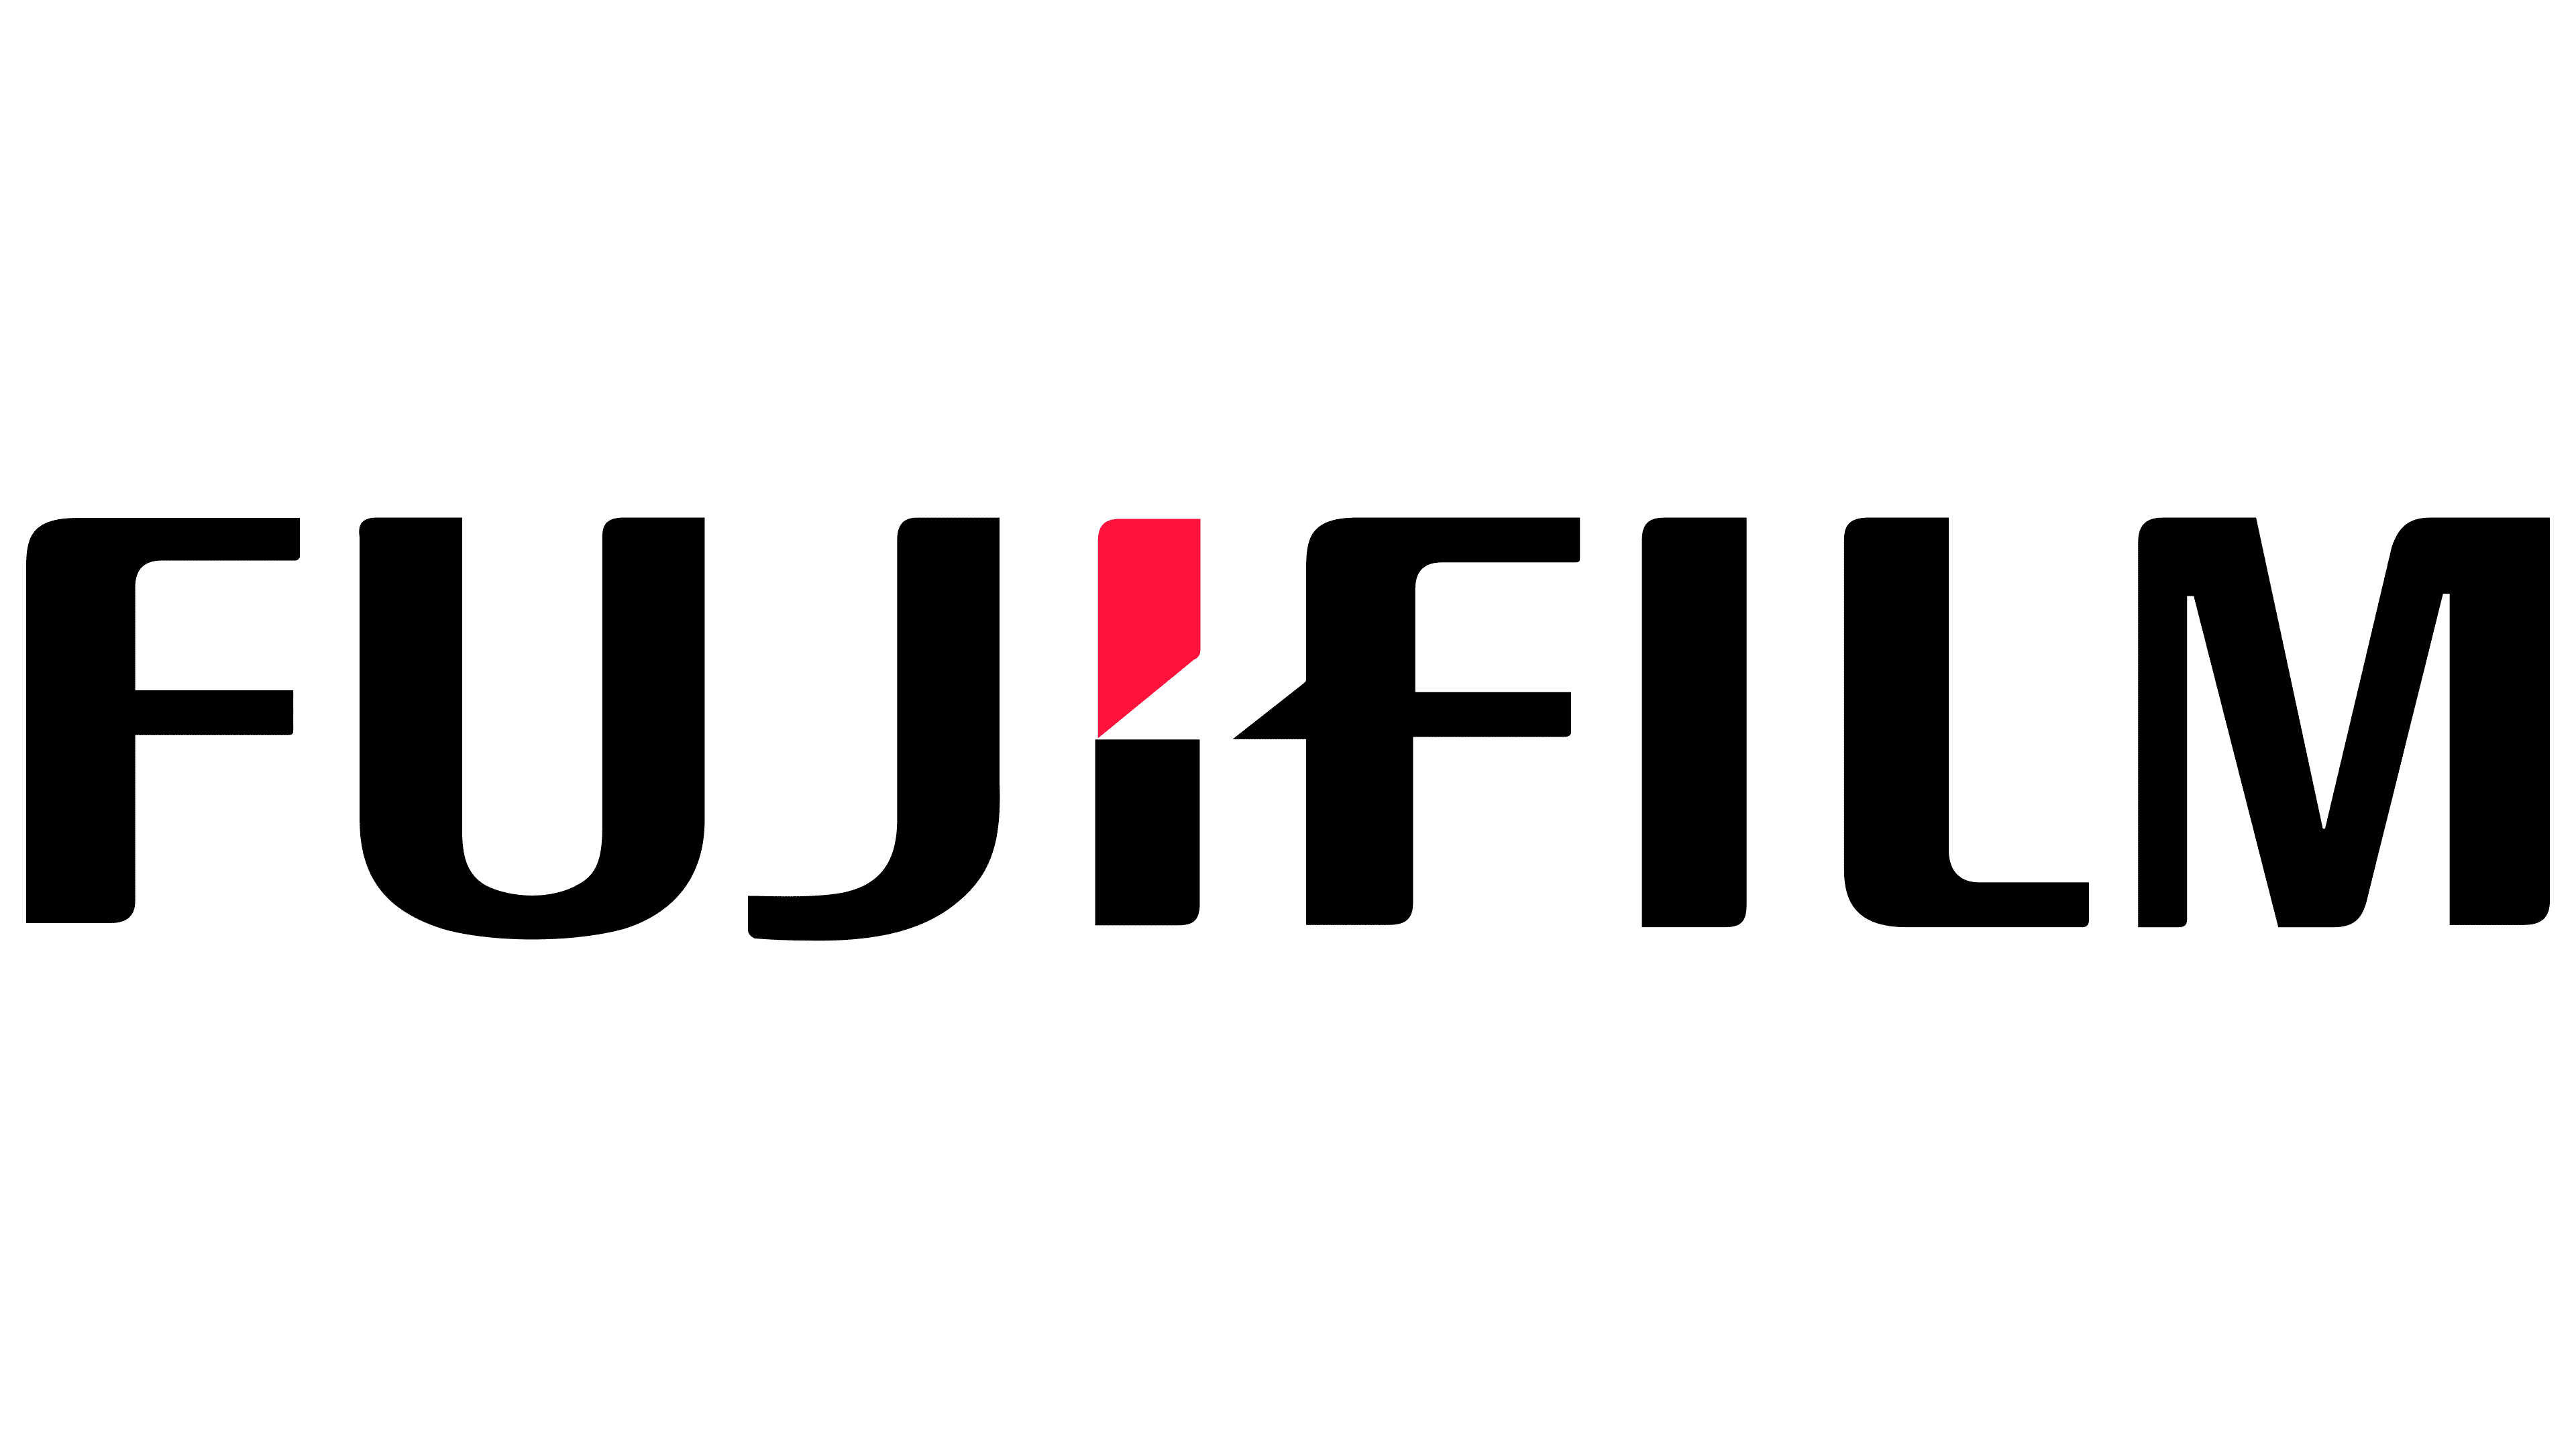 Fujifilm Logo